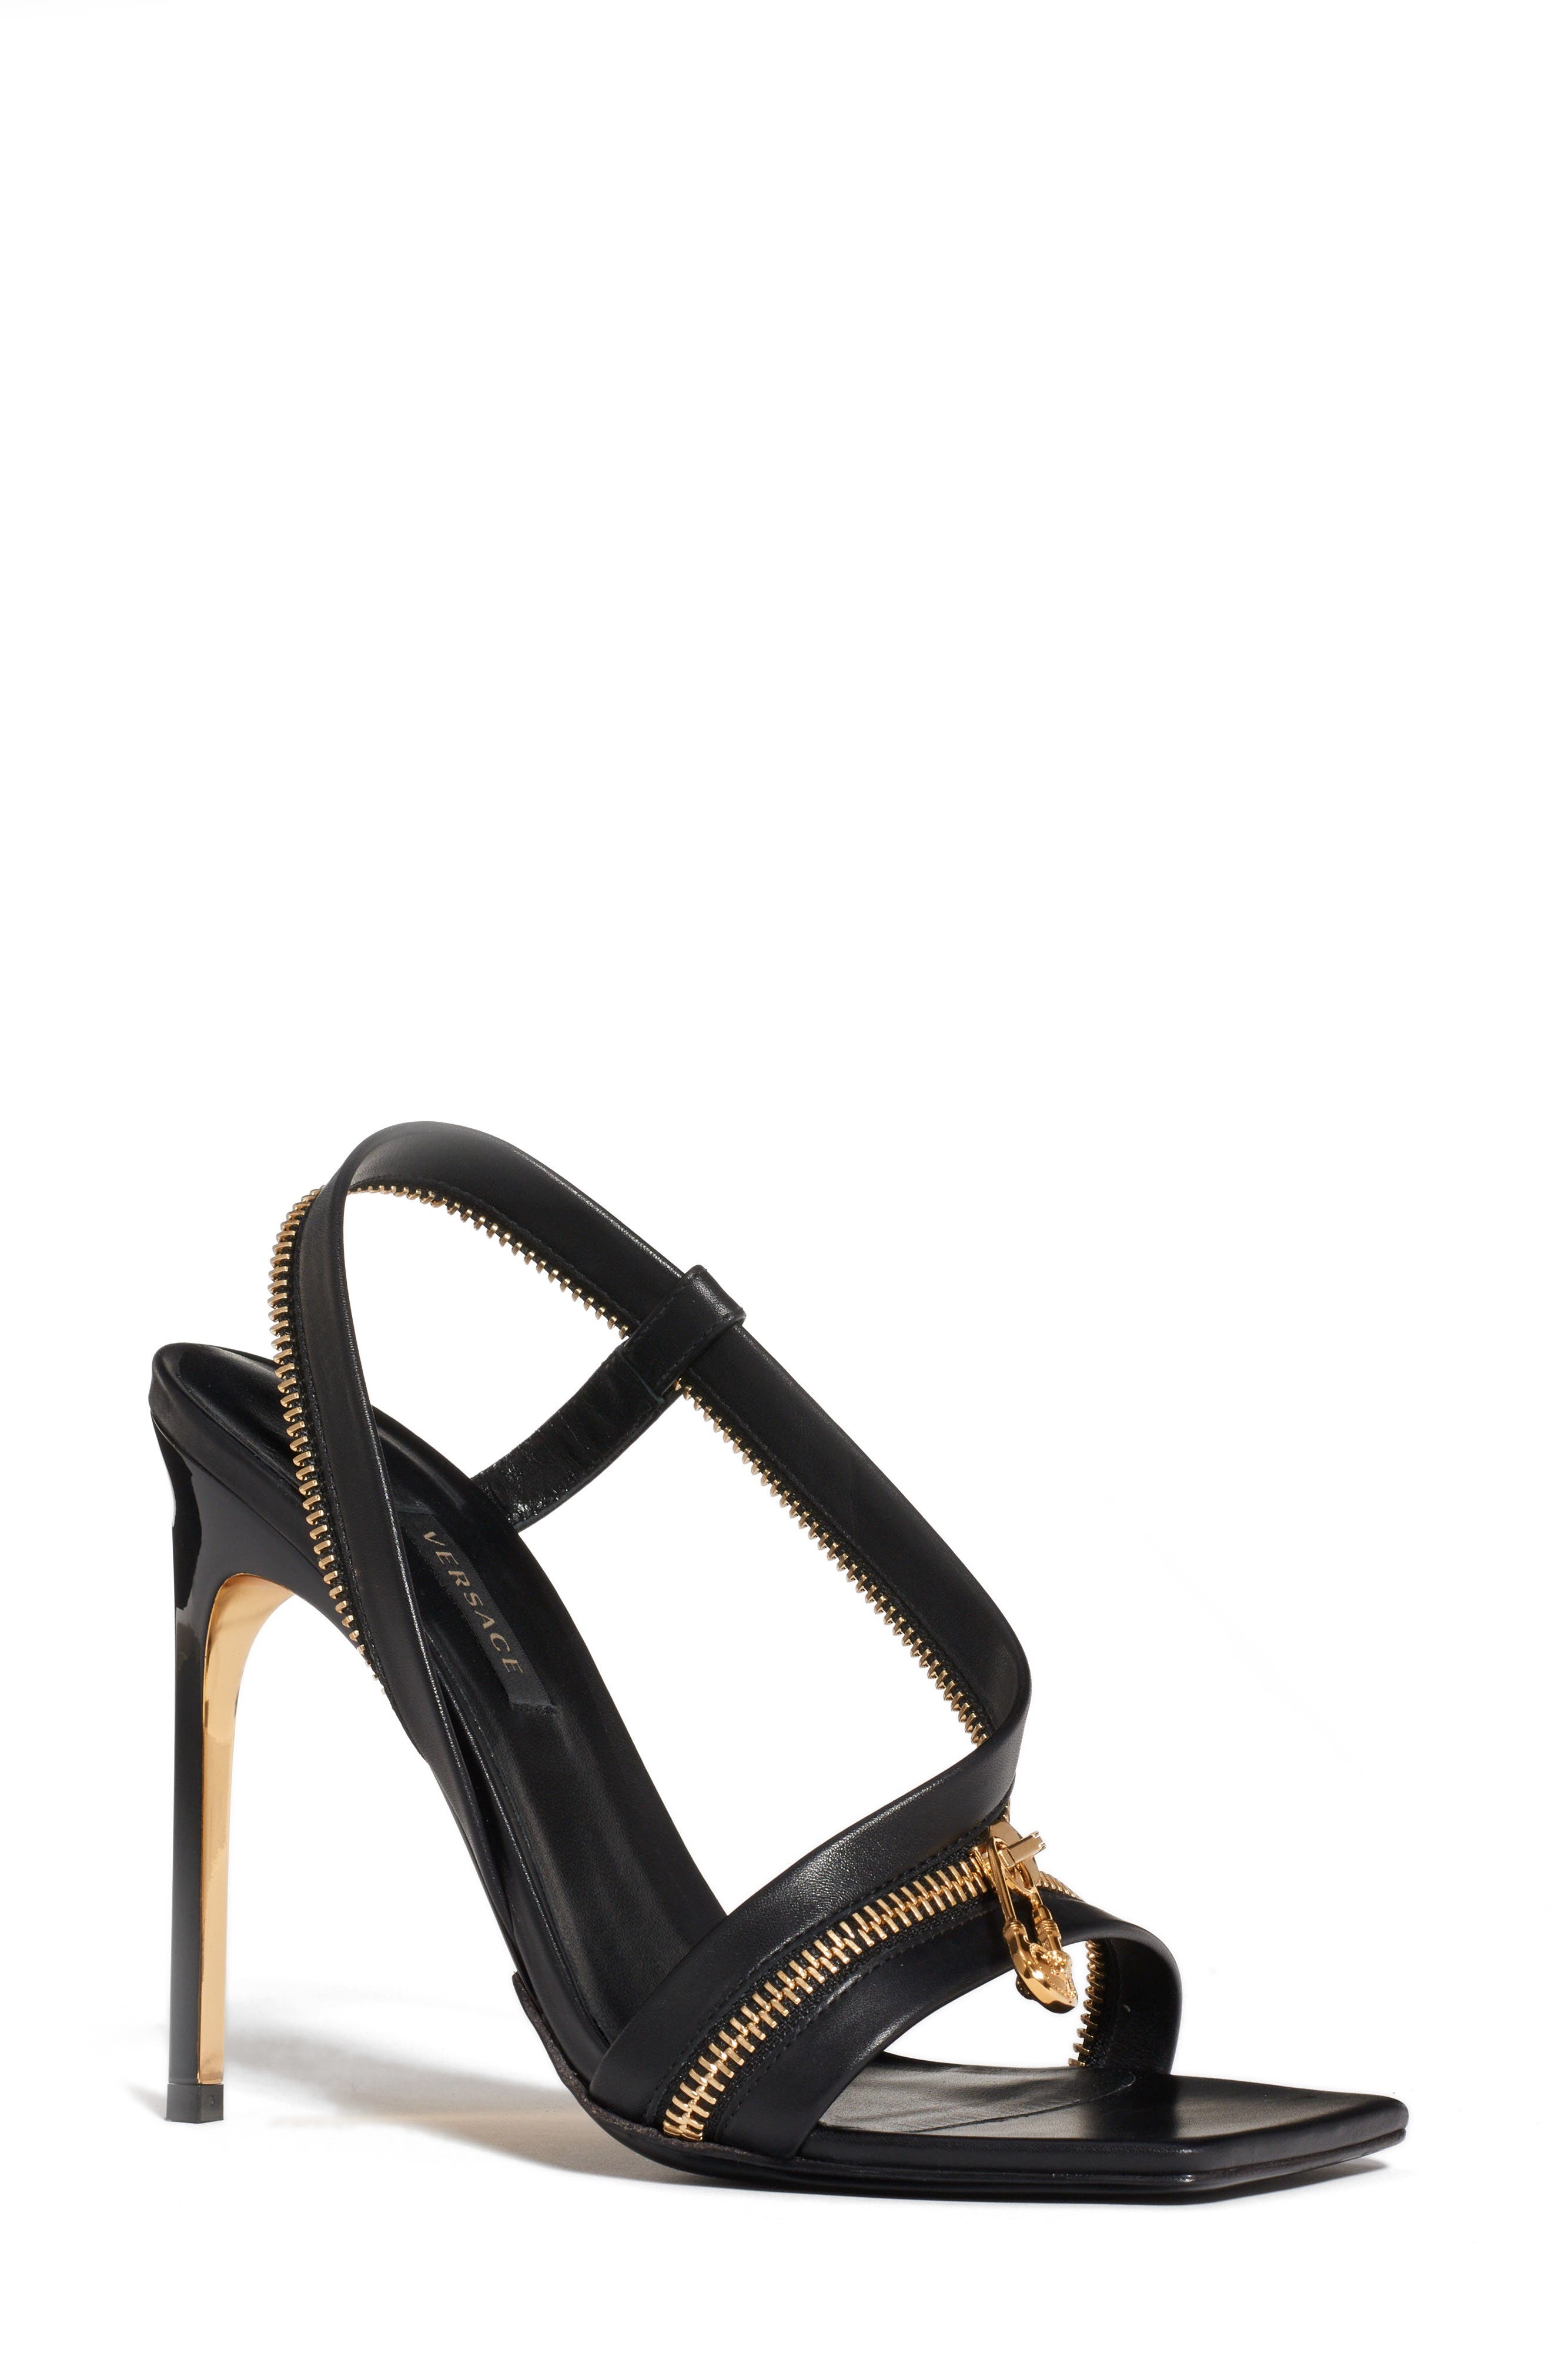 versace black strappy heels